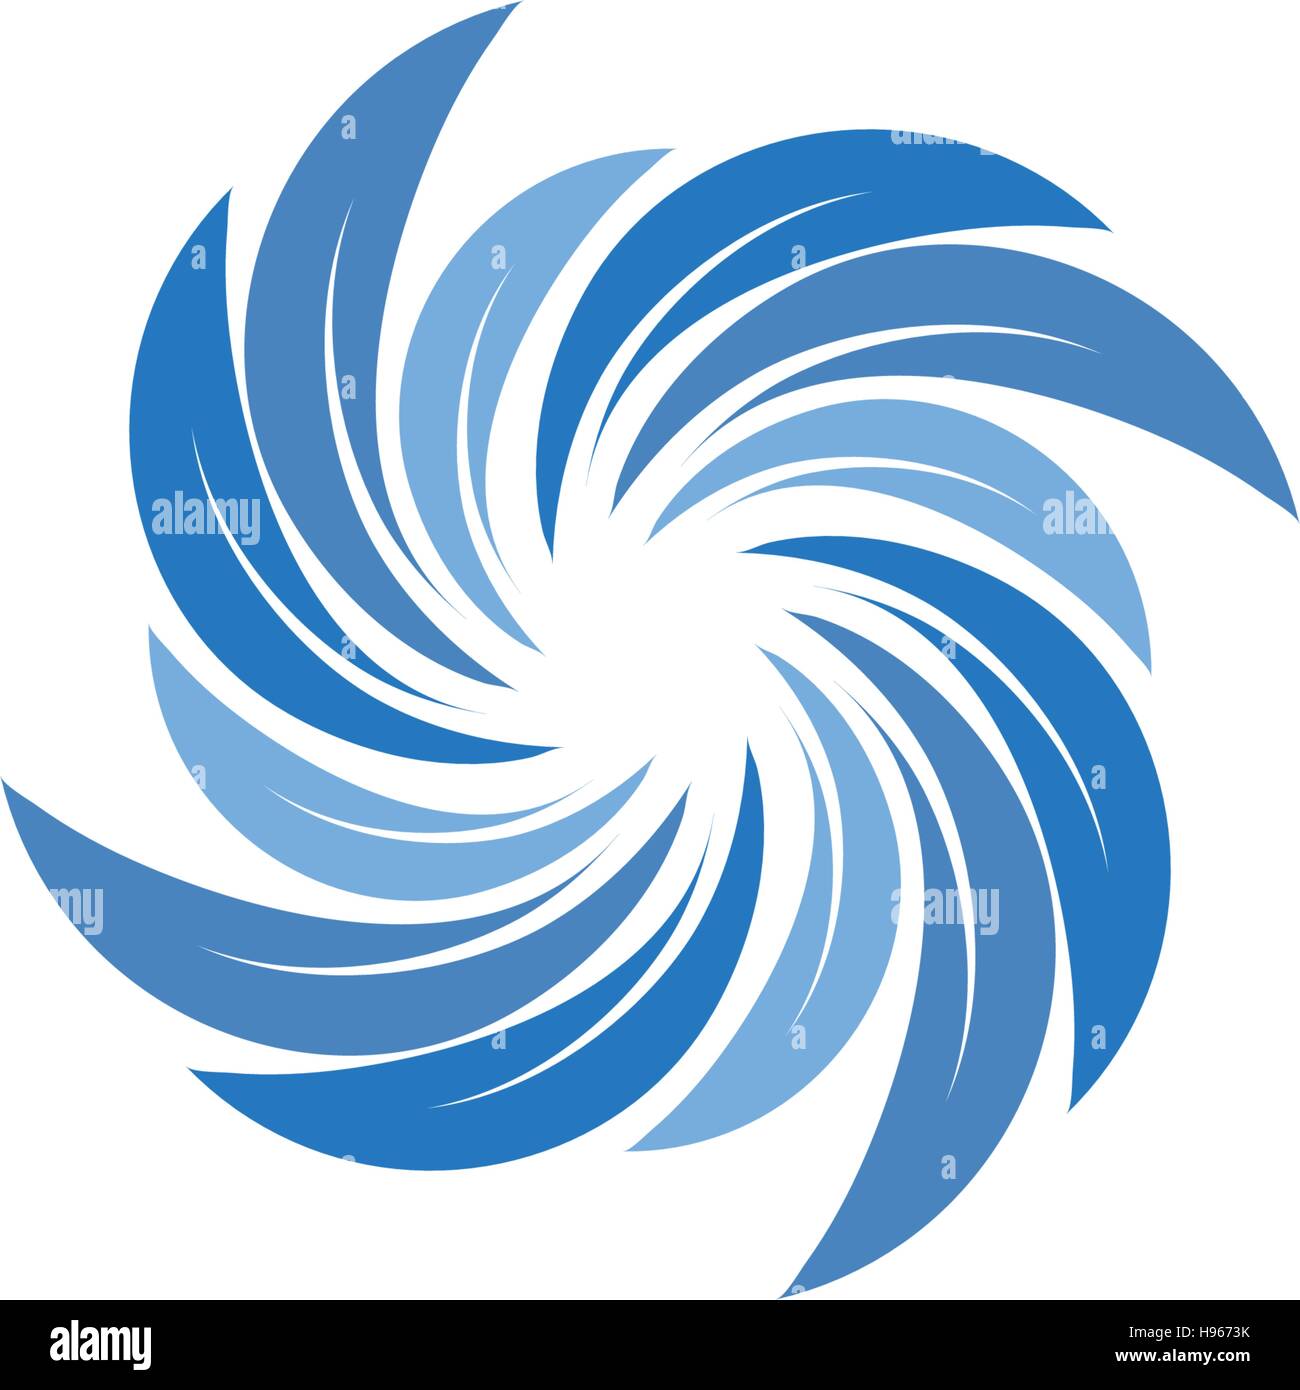 Color azul abstractos aislados espiral spining logo. Logotipo de turbulencias. Icono de agua. Signo de vórtice. Símbolo de líquido. Emblema del sistema de climatización. Aqua ilustración vectorial. Ilustración del Vector